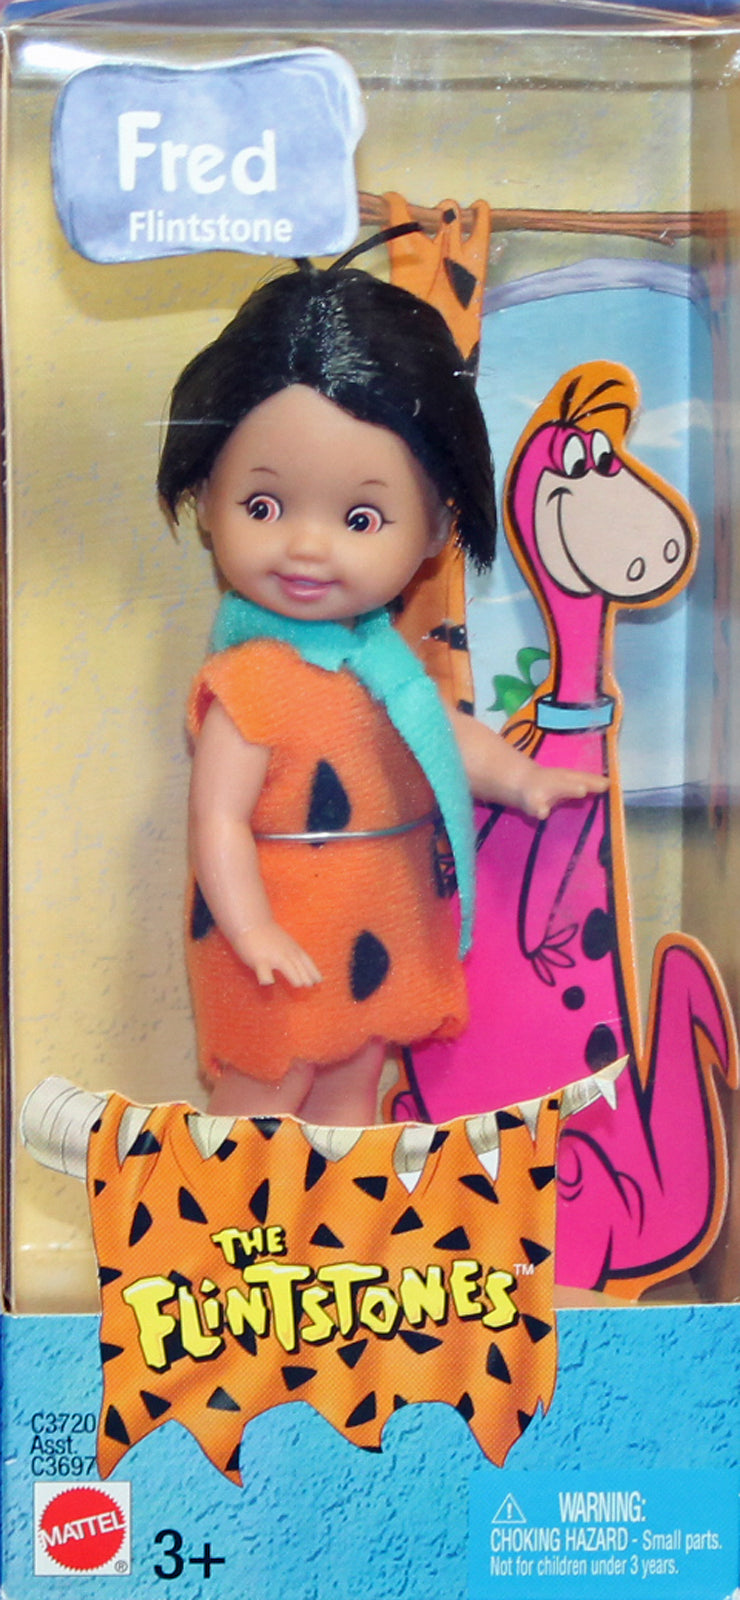 2003 Tommy as Fred Flintstone Barbie (C3720)